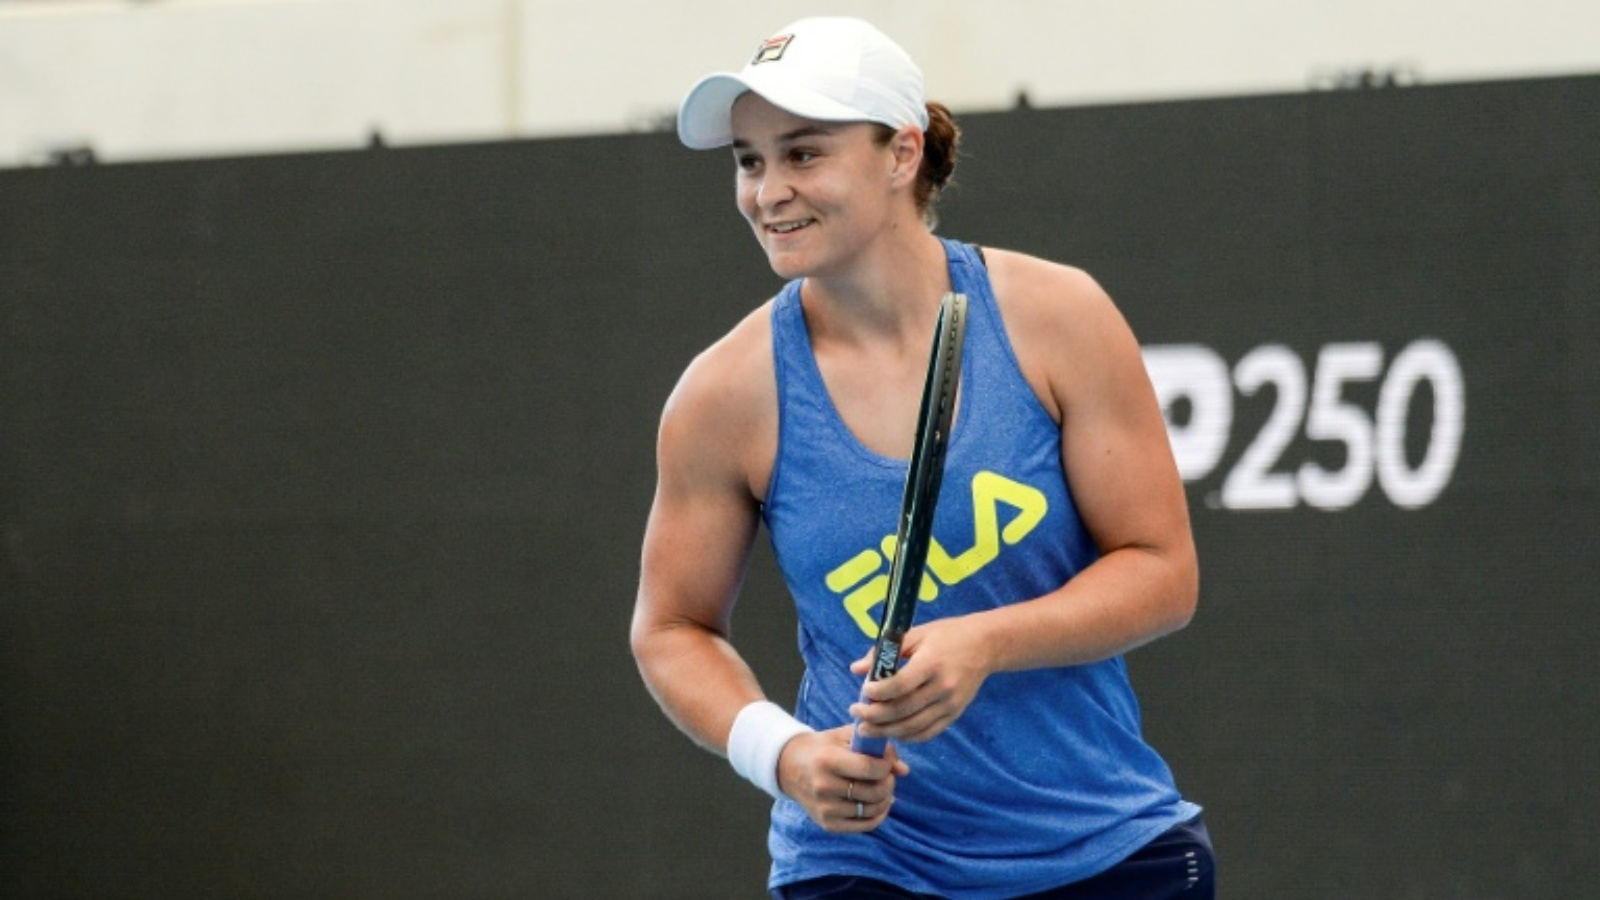 الأسترالية آشلي بارتي في حصة تدريبية استعداداً للمشاركة في دورة أديلاييد في كرة المضرب. الثالث من كانون الثاني/يناير 2022